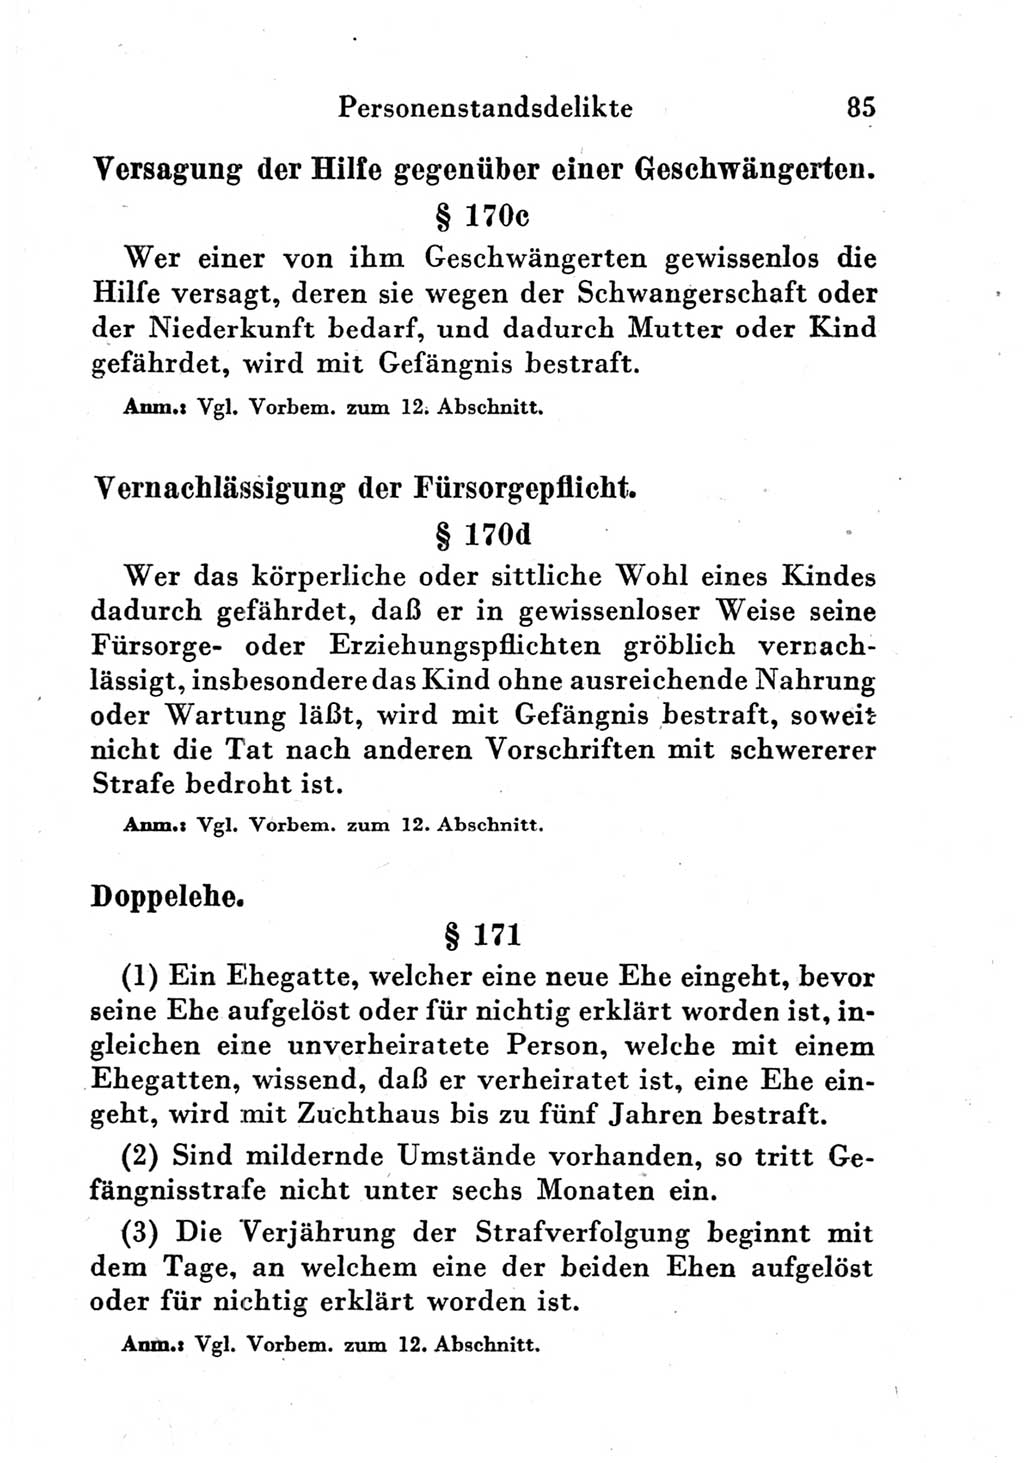 Strafgesetzbuch (StGB) und andere Strafgesetze [Deutsche Demokratische Republik (DDR)] 1951, Seite 85 (StGB Strafges. DDR 1951, S. 85)